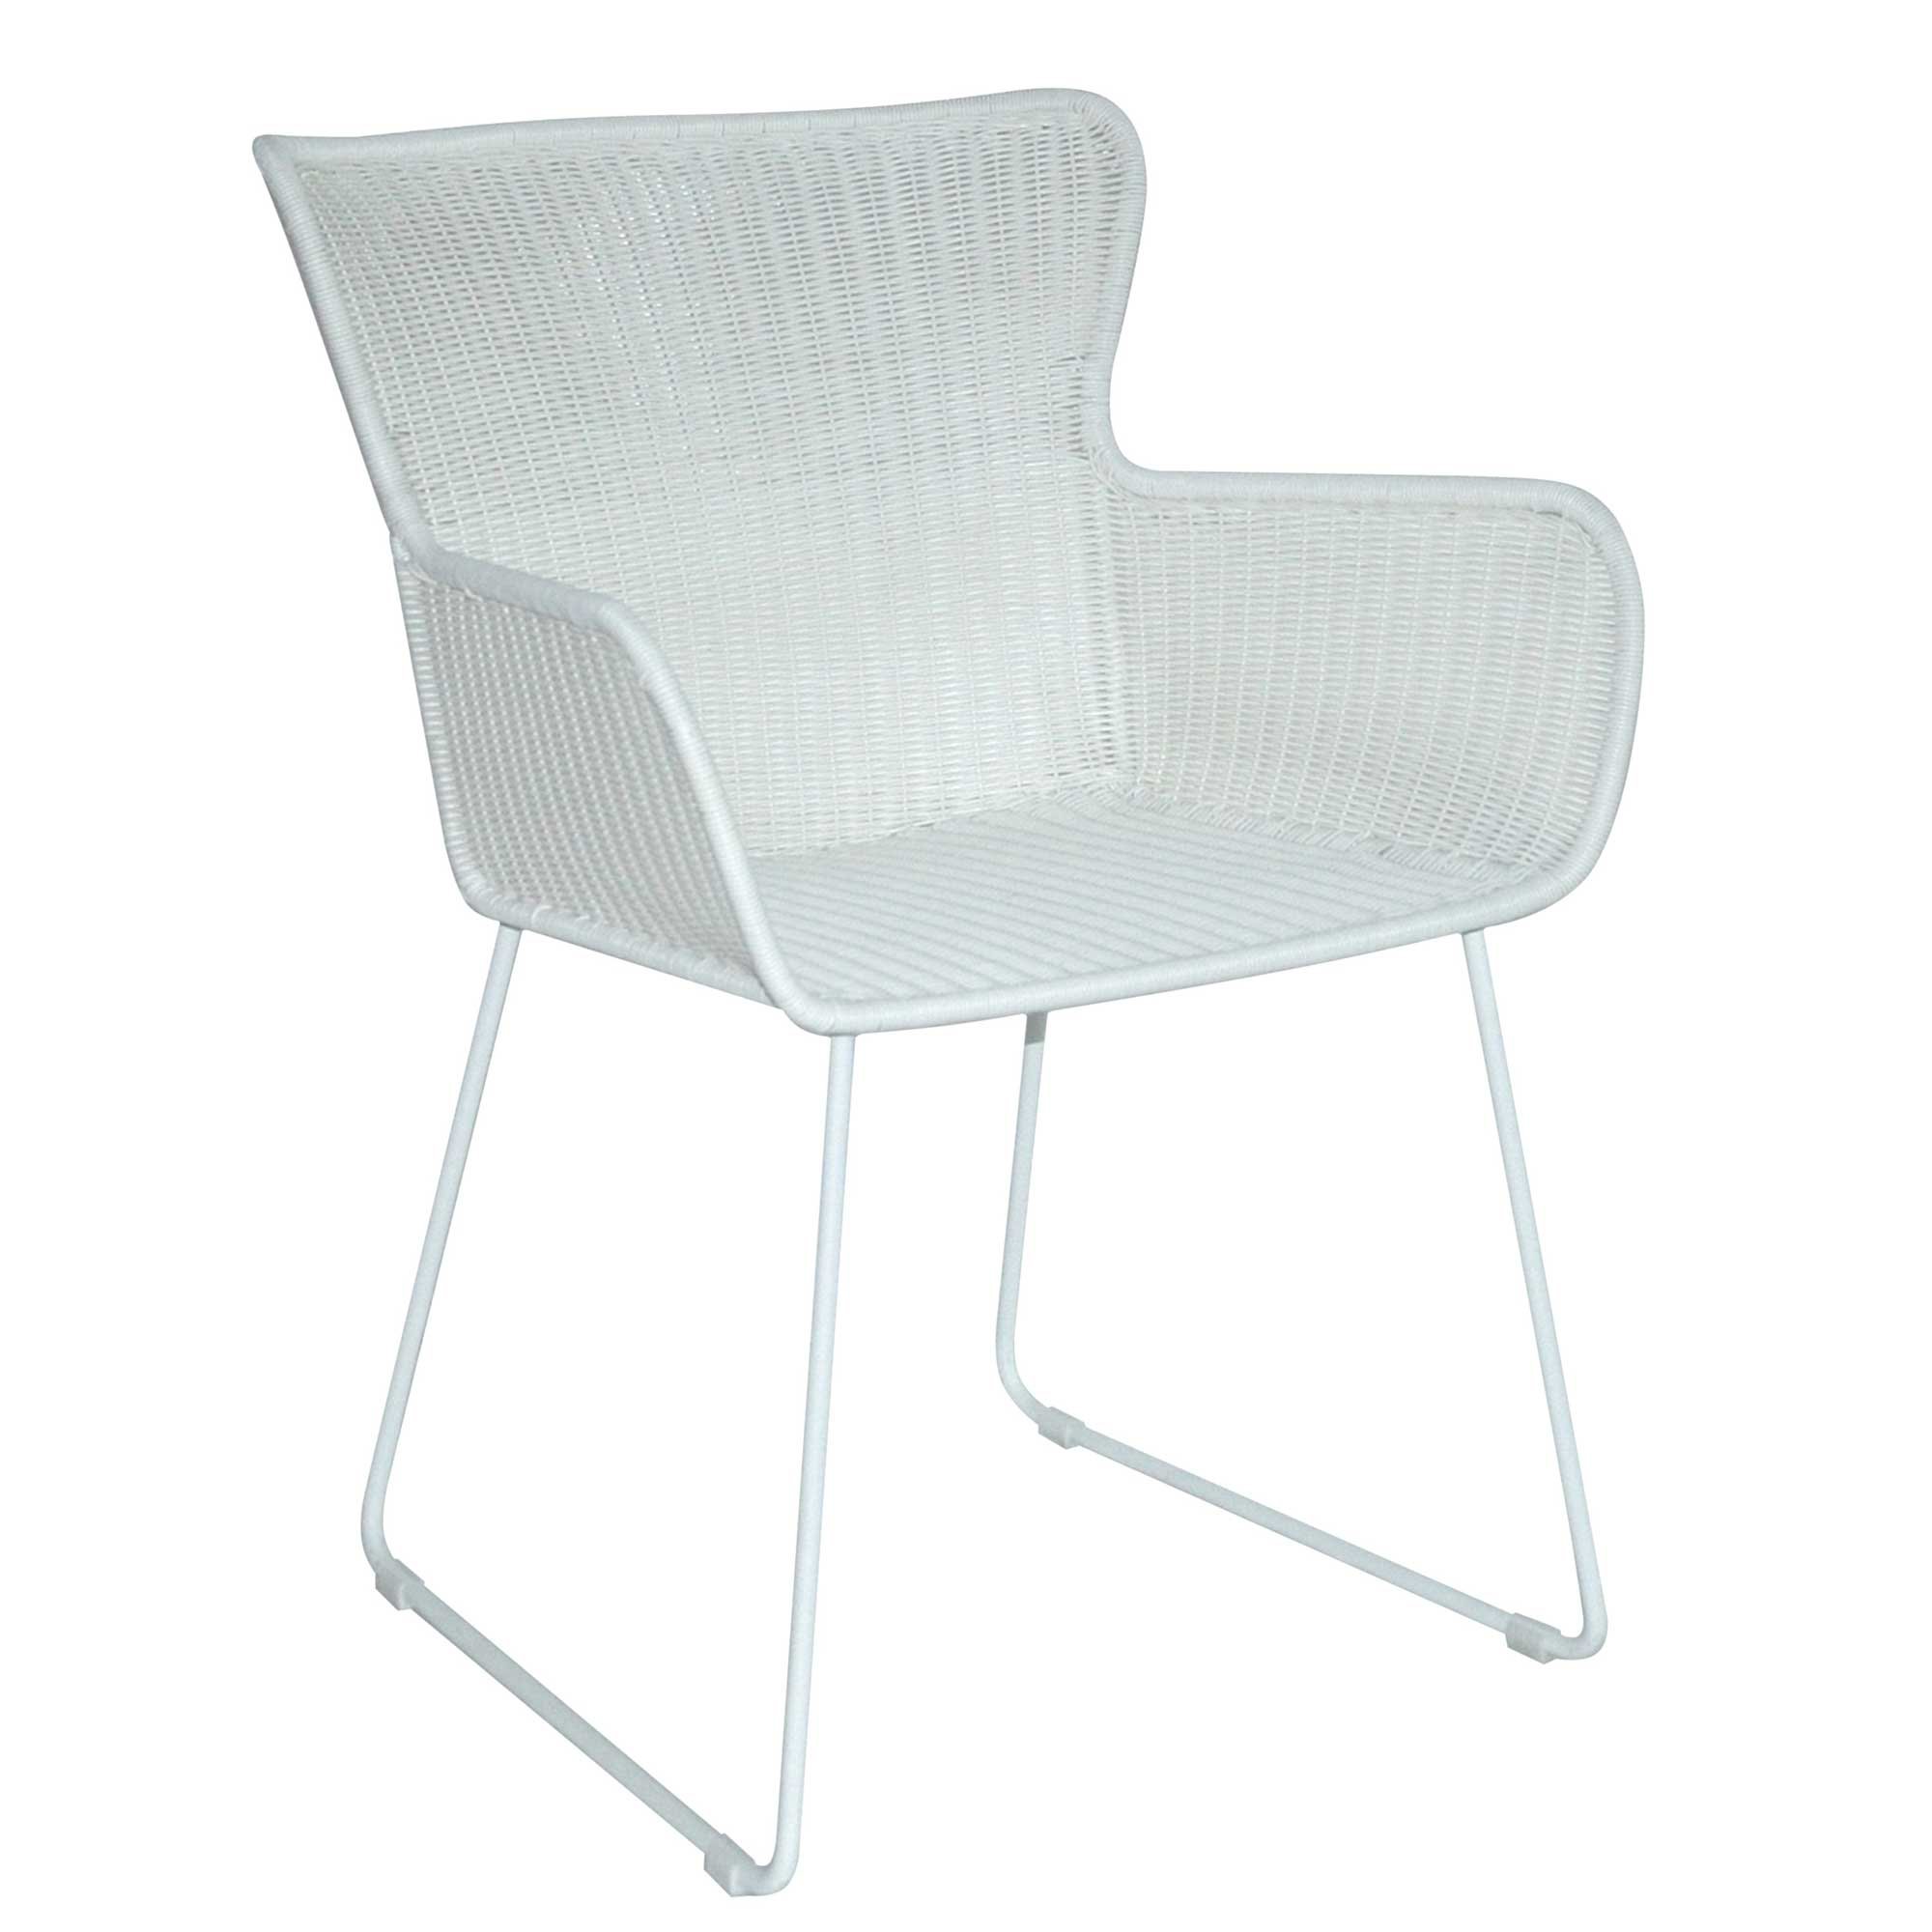 Marbella Garden Dining Chair, Stone White